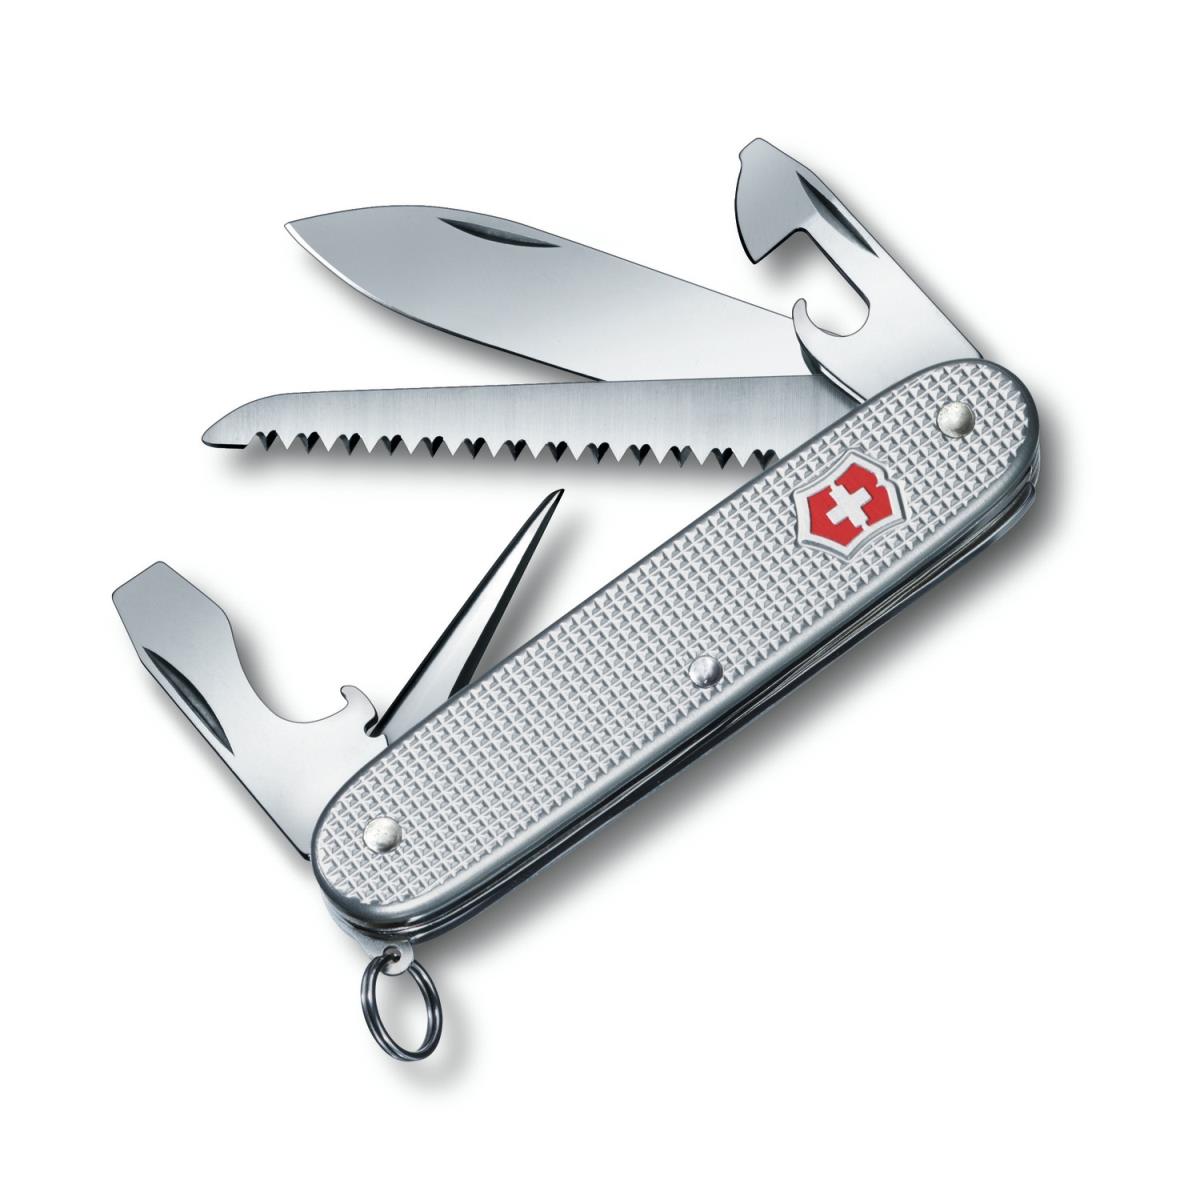 Нож 0.8241.26 VICTORINOX нож перочинный victorinox huntsman 91 мм 15 функций камуфляж